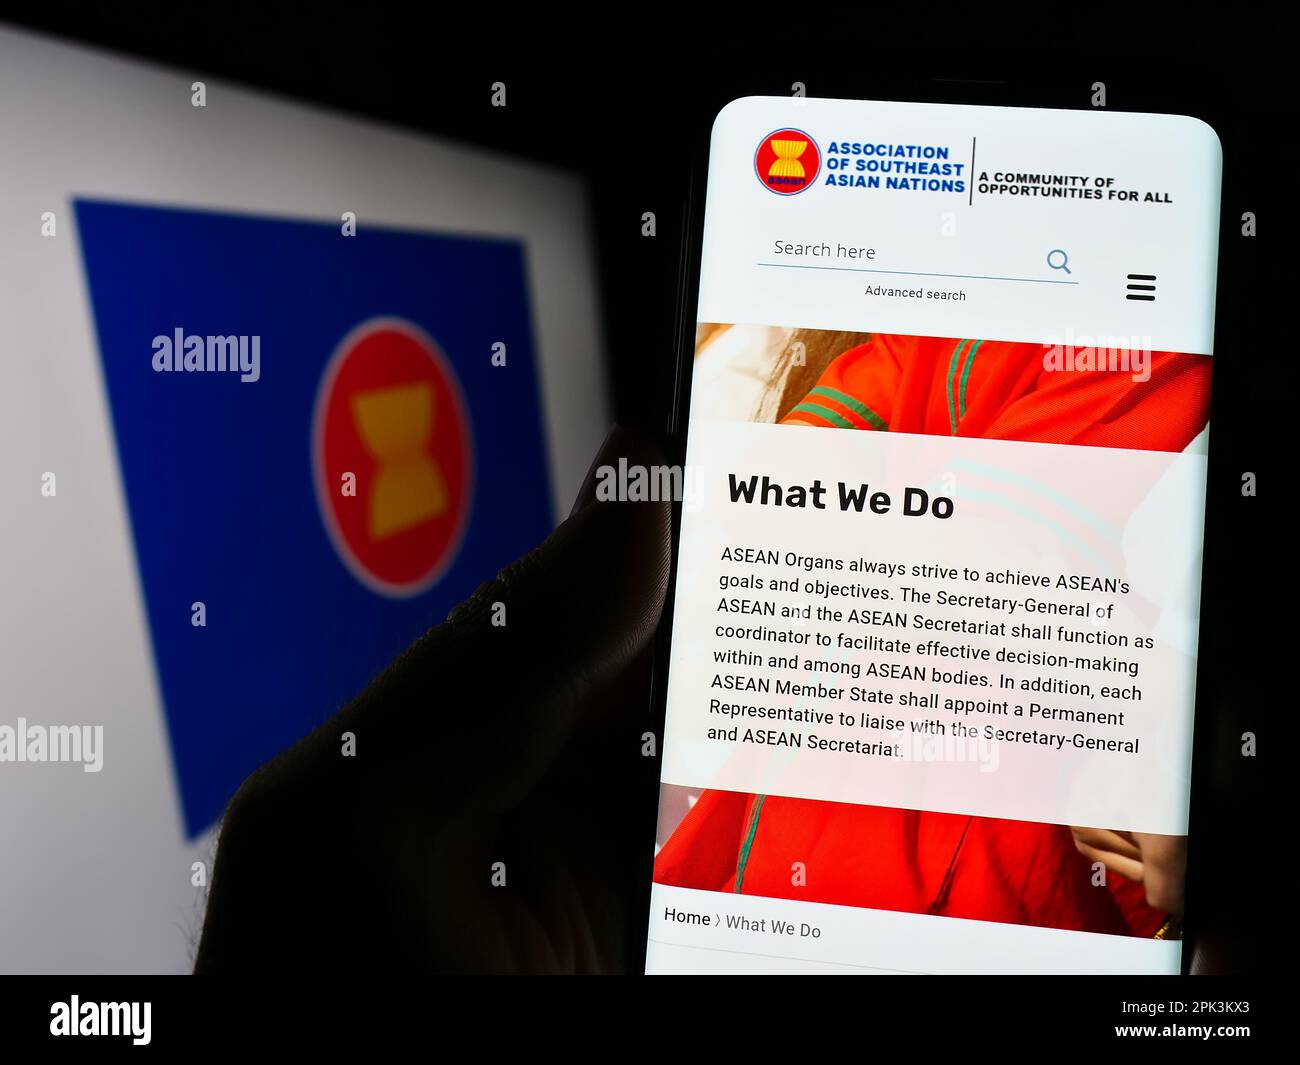 Persona che tiene il cellulare con pagina web dell'Associazione delle nazioni del Sud-Est Asiatico (ASEAN) sullo schermo con il logo. Messa a fuoco al centro del display del telefono. Foto Stock